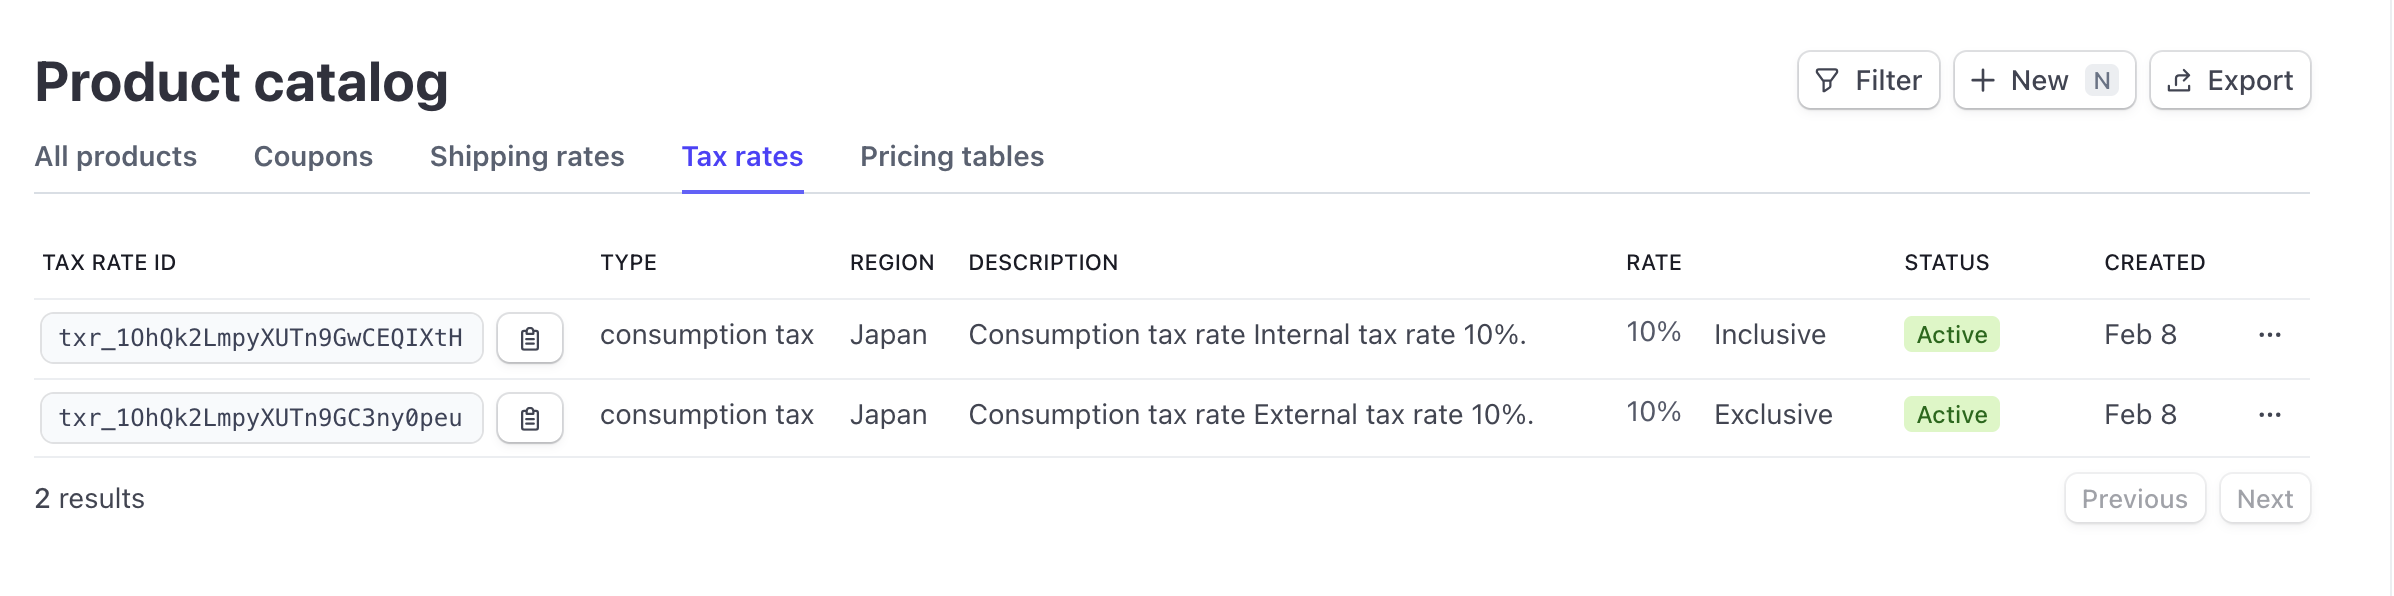 tax-rates-10